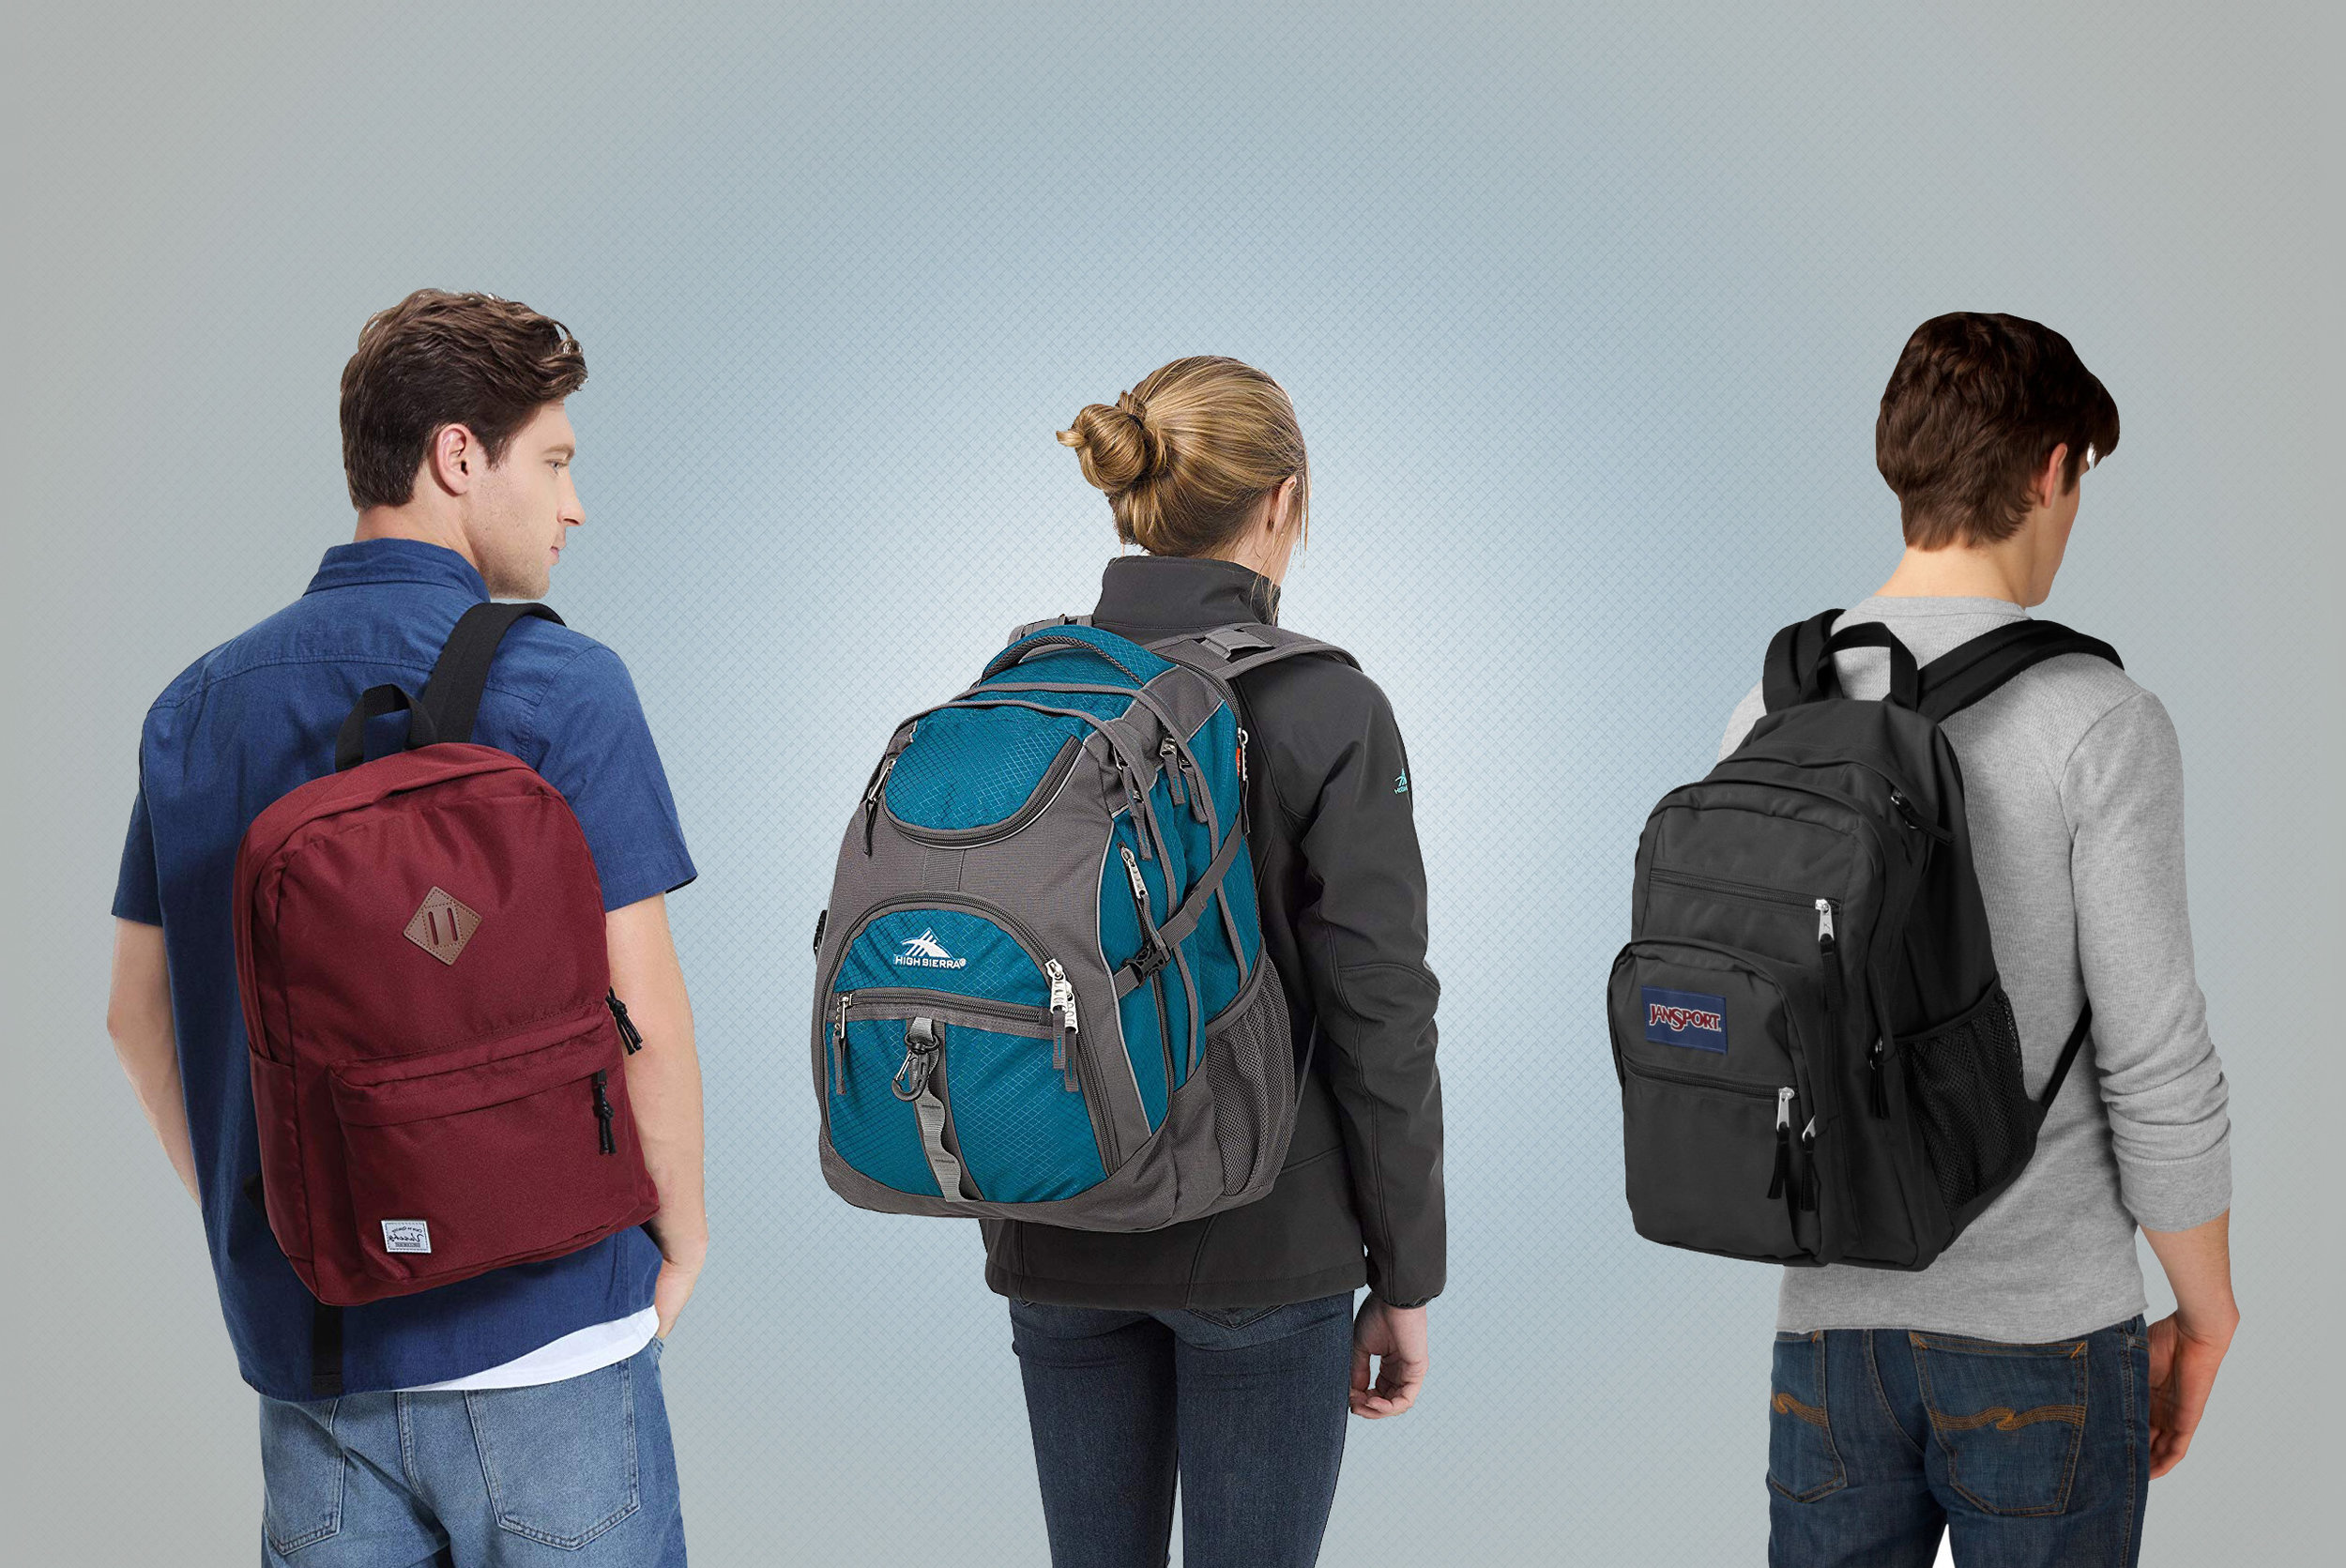 Best Cheap Backpacks For School 